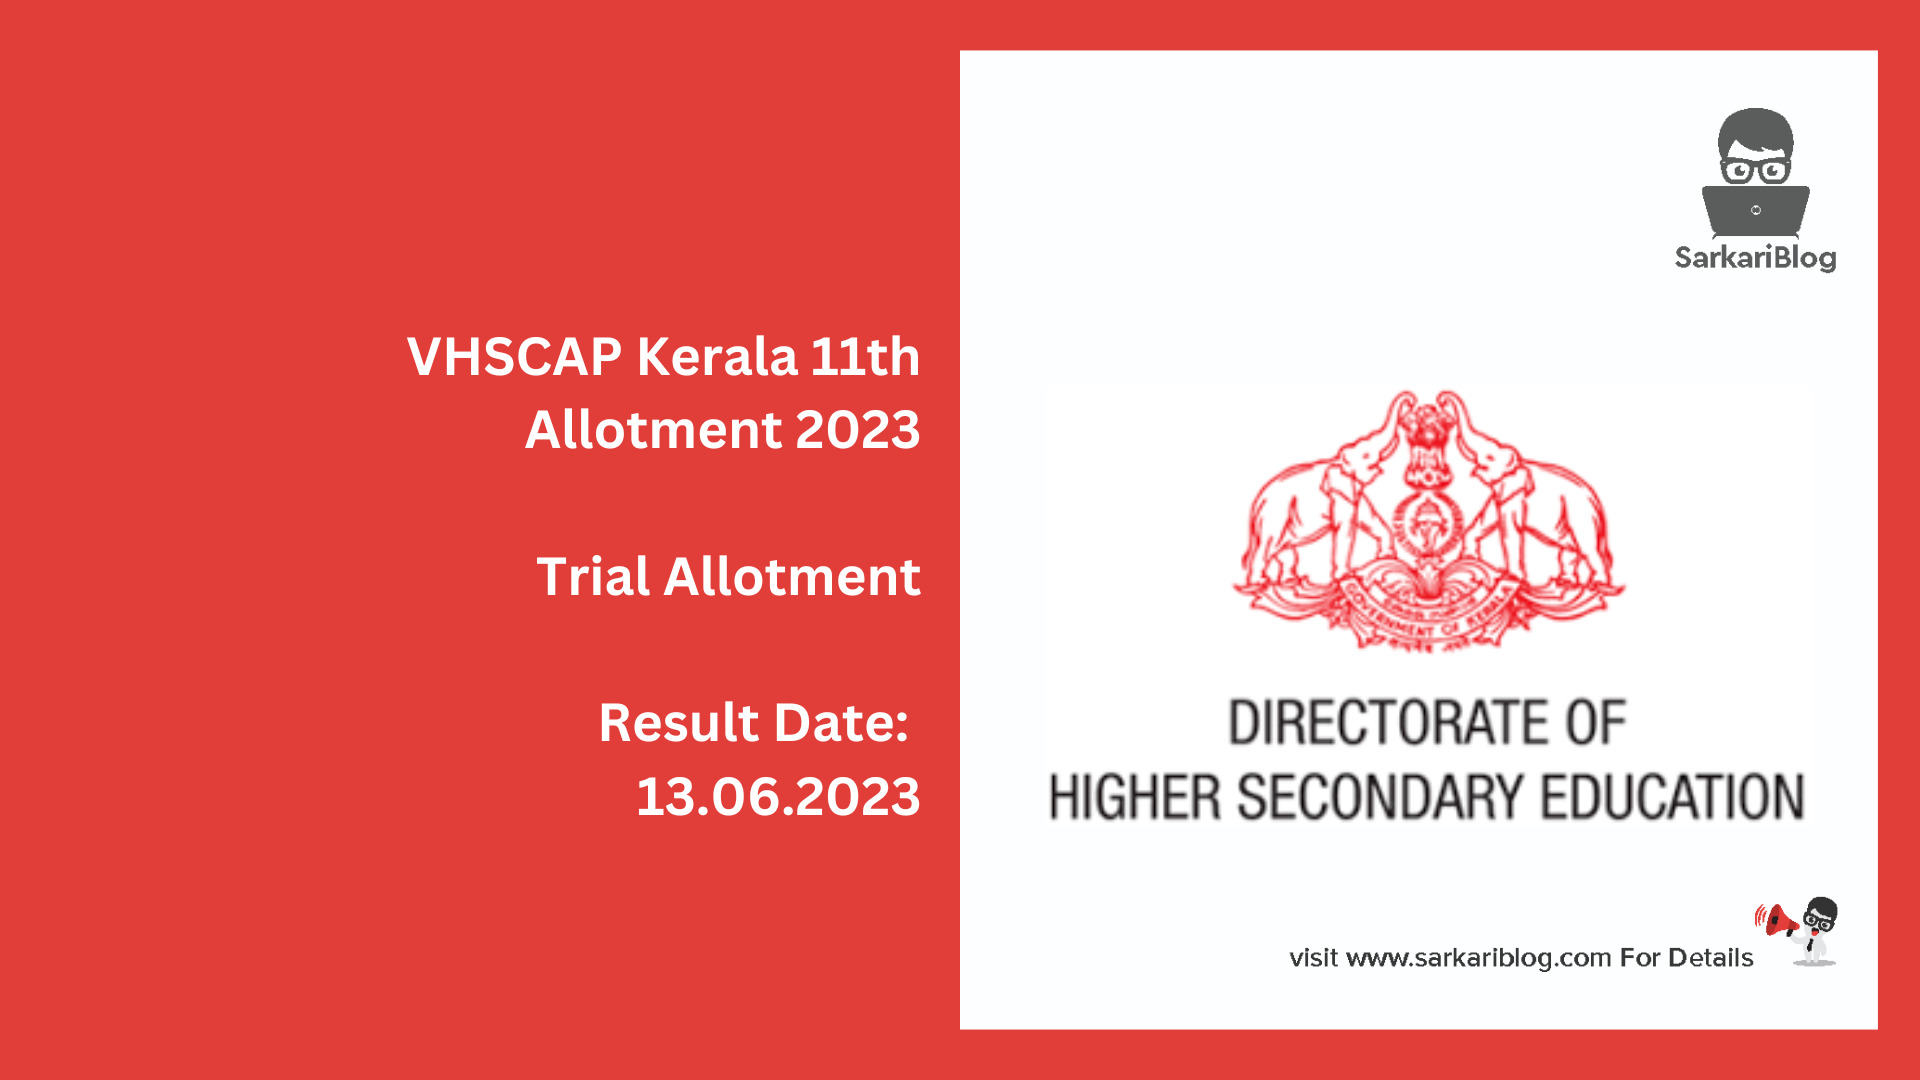 VHSCAP Kerala 11th Allotment 2023